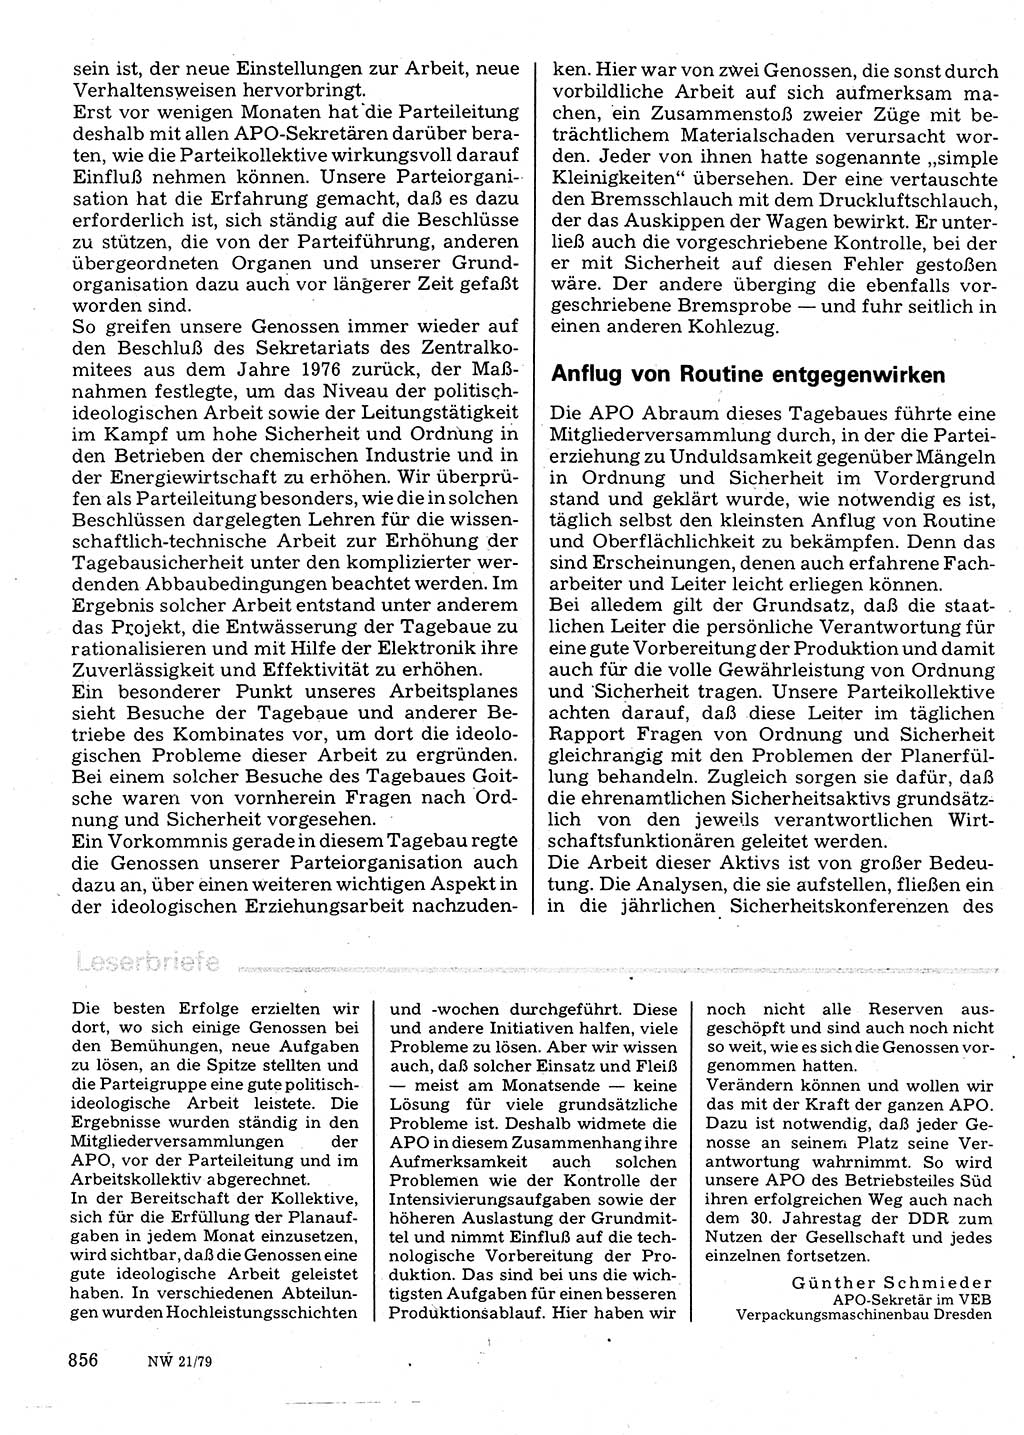 Neuer Weg (NW), Organ des Zentralkomitees (ZK) der SED (Sozialistische Einheitspartei Deutschlands) für Fragen des Parteilebens, 34. Jahrgang [Deutsche Demokratische Republik (DDR)] 1979, Seite 856 (NW ZK SED DDR 1979, S. 856)